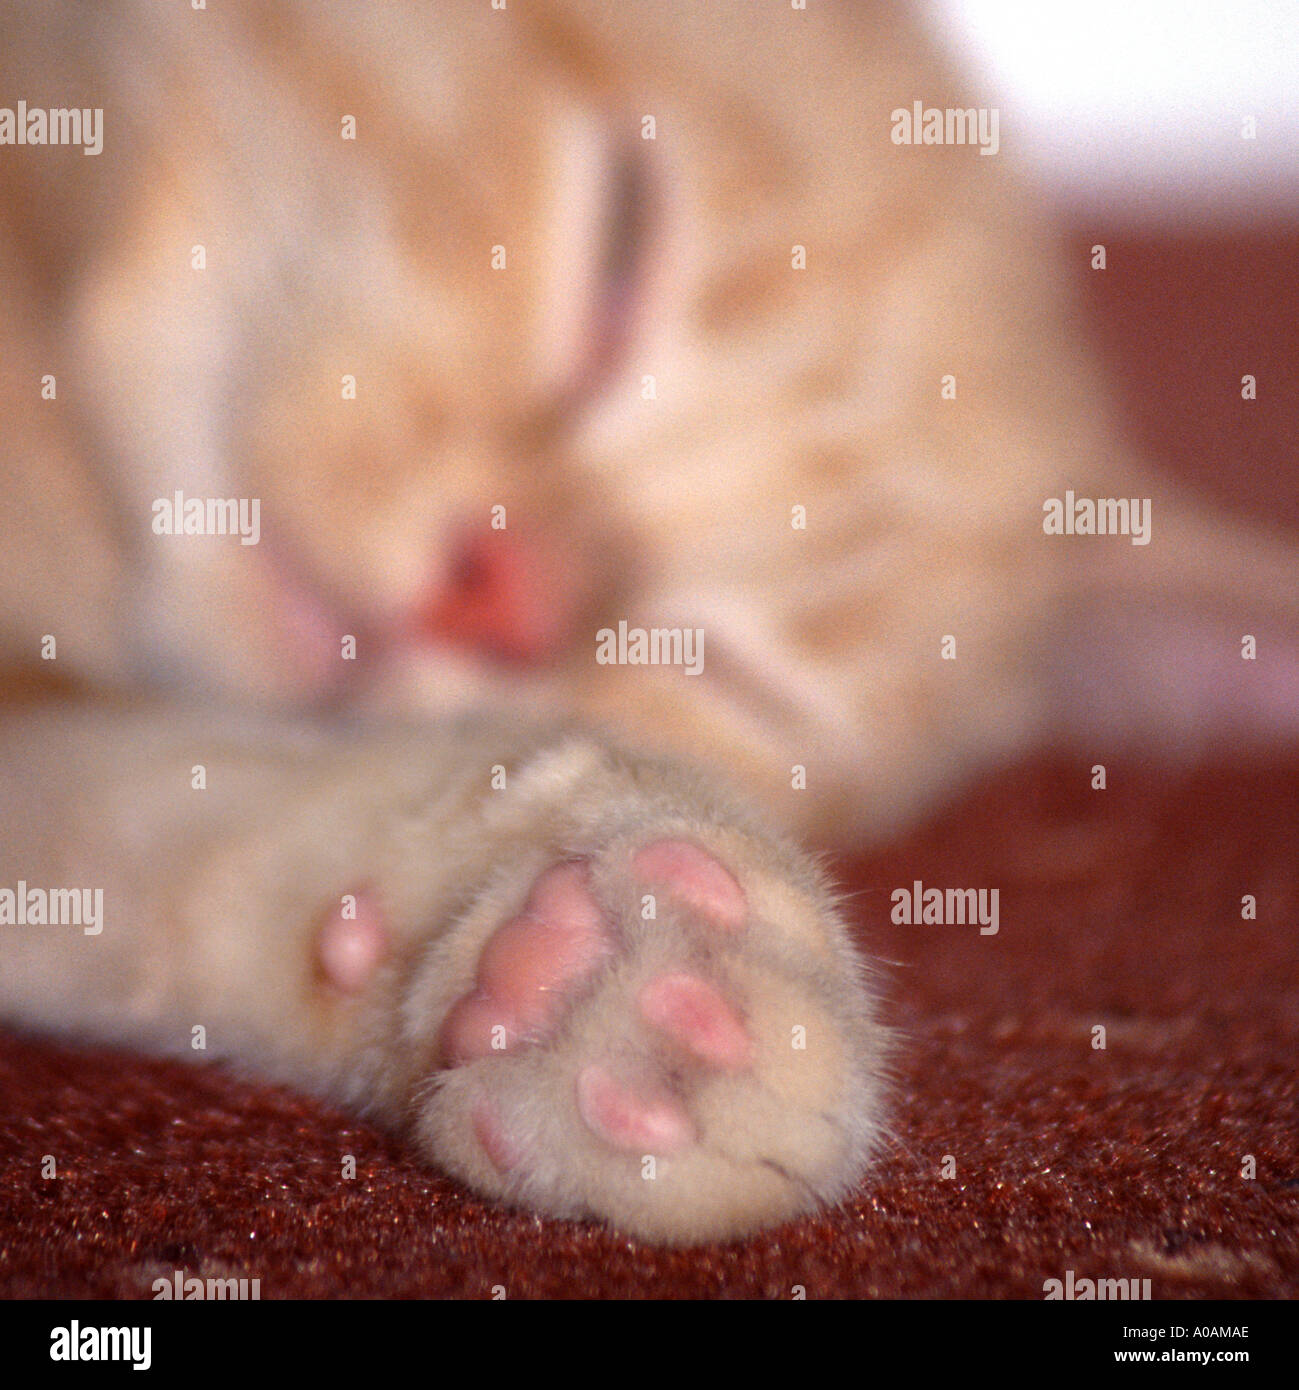 Giovani mackerell Rosso tabby kitten posa sul tappeto rosso con zampa anteriore proteso verso la telecamera Foto Stock